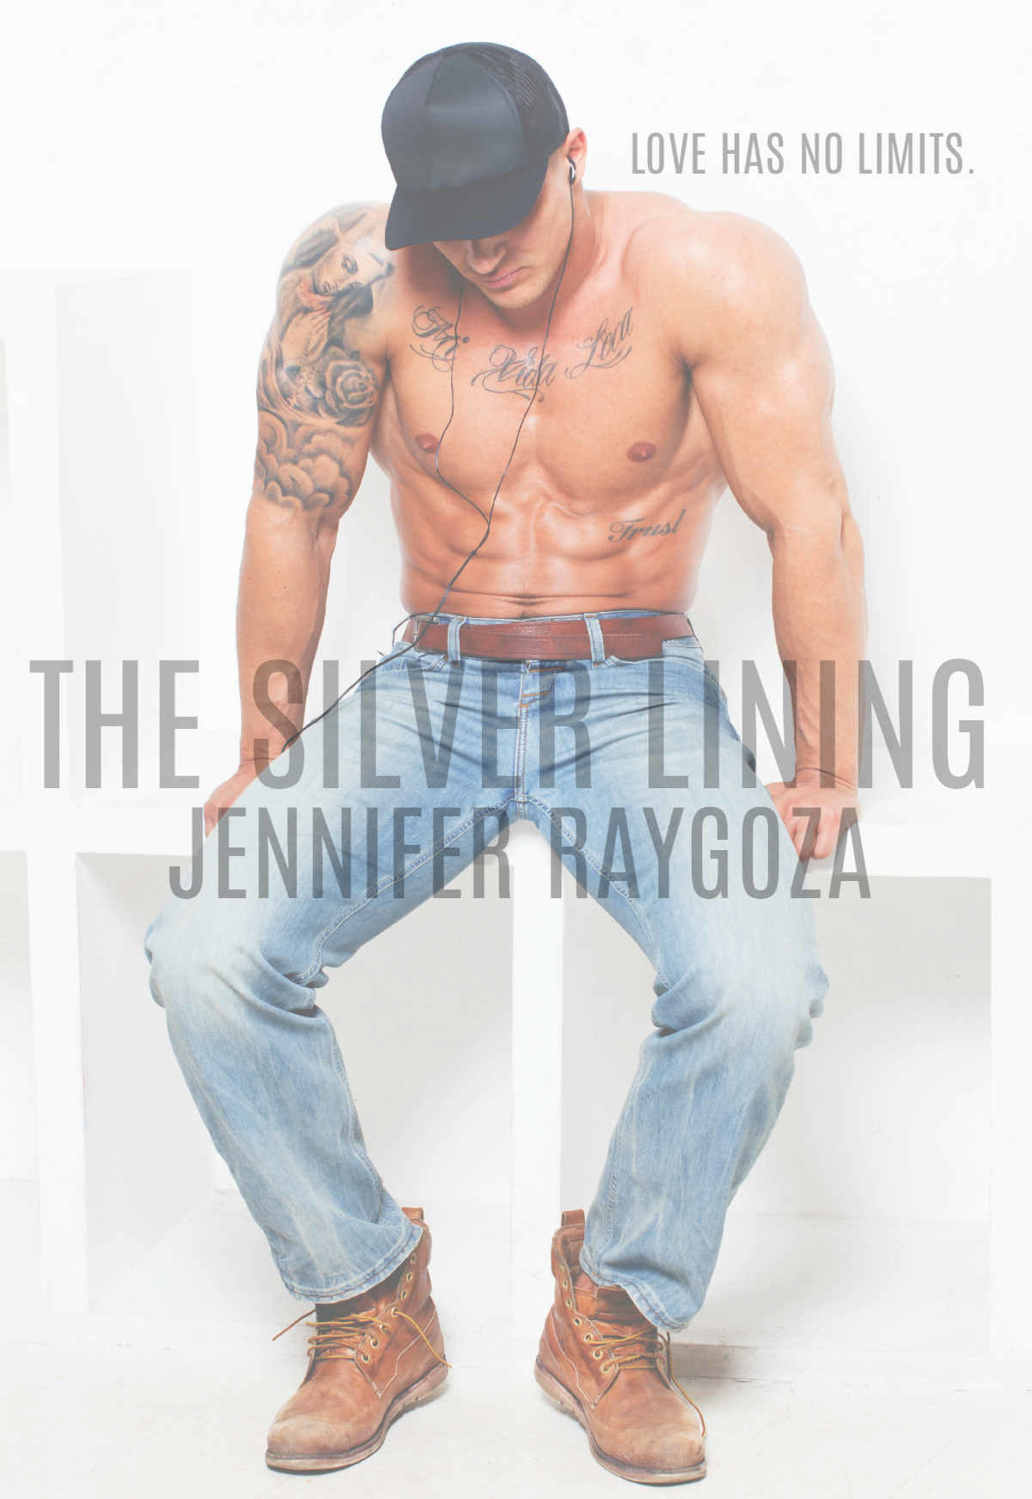 The Silver Lining by Jennifer Raygoza